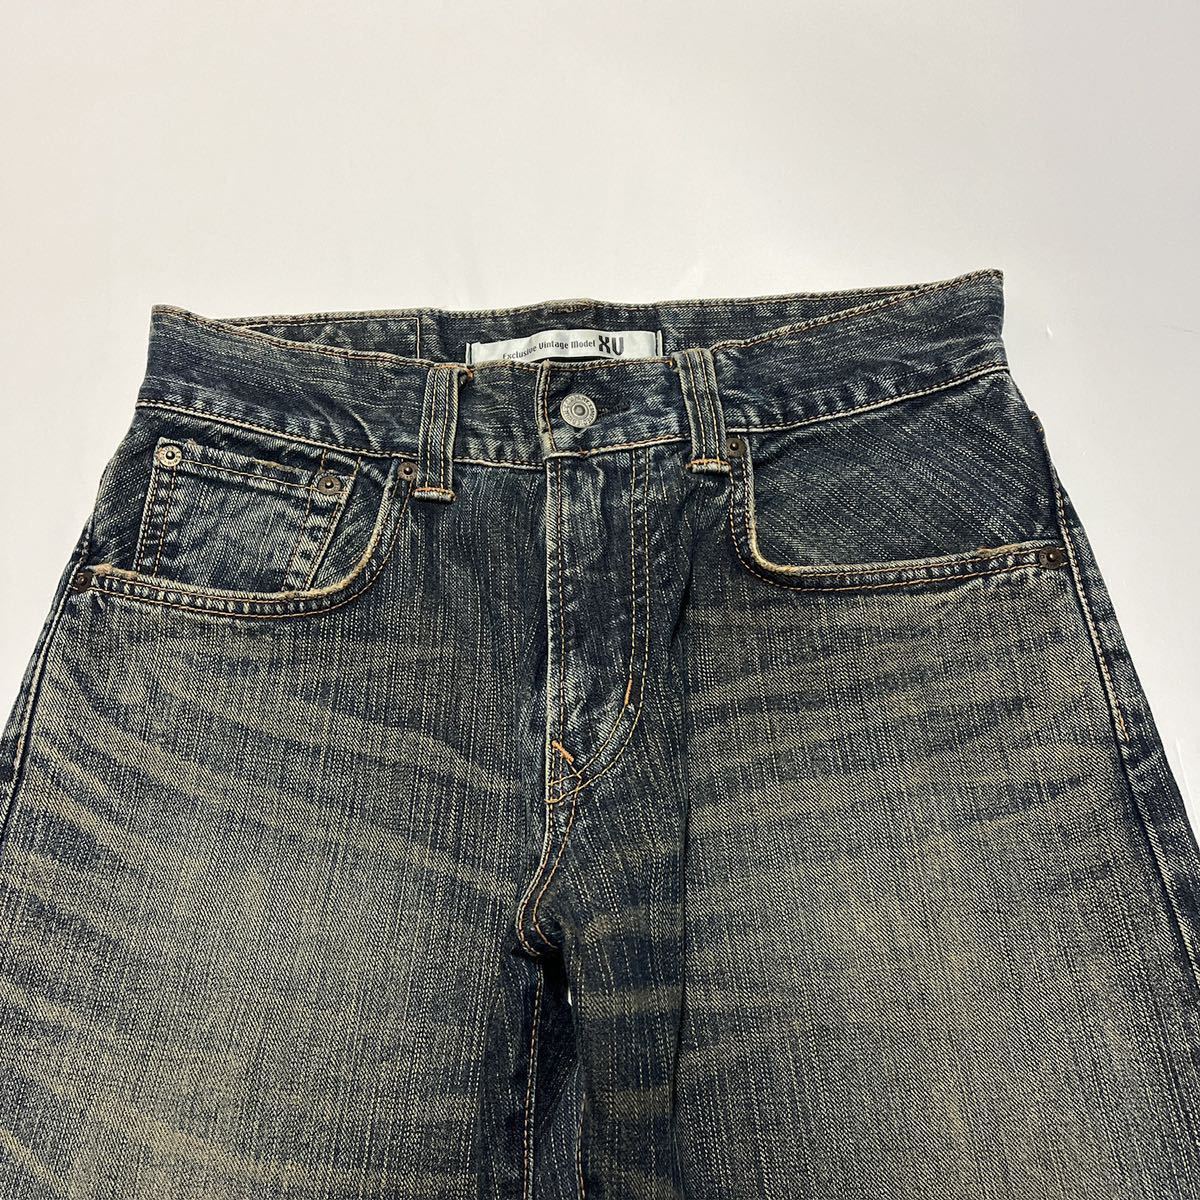 EDWIN Edwin 405XV Denim брюки джинсы W29 сделано в Японии 